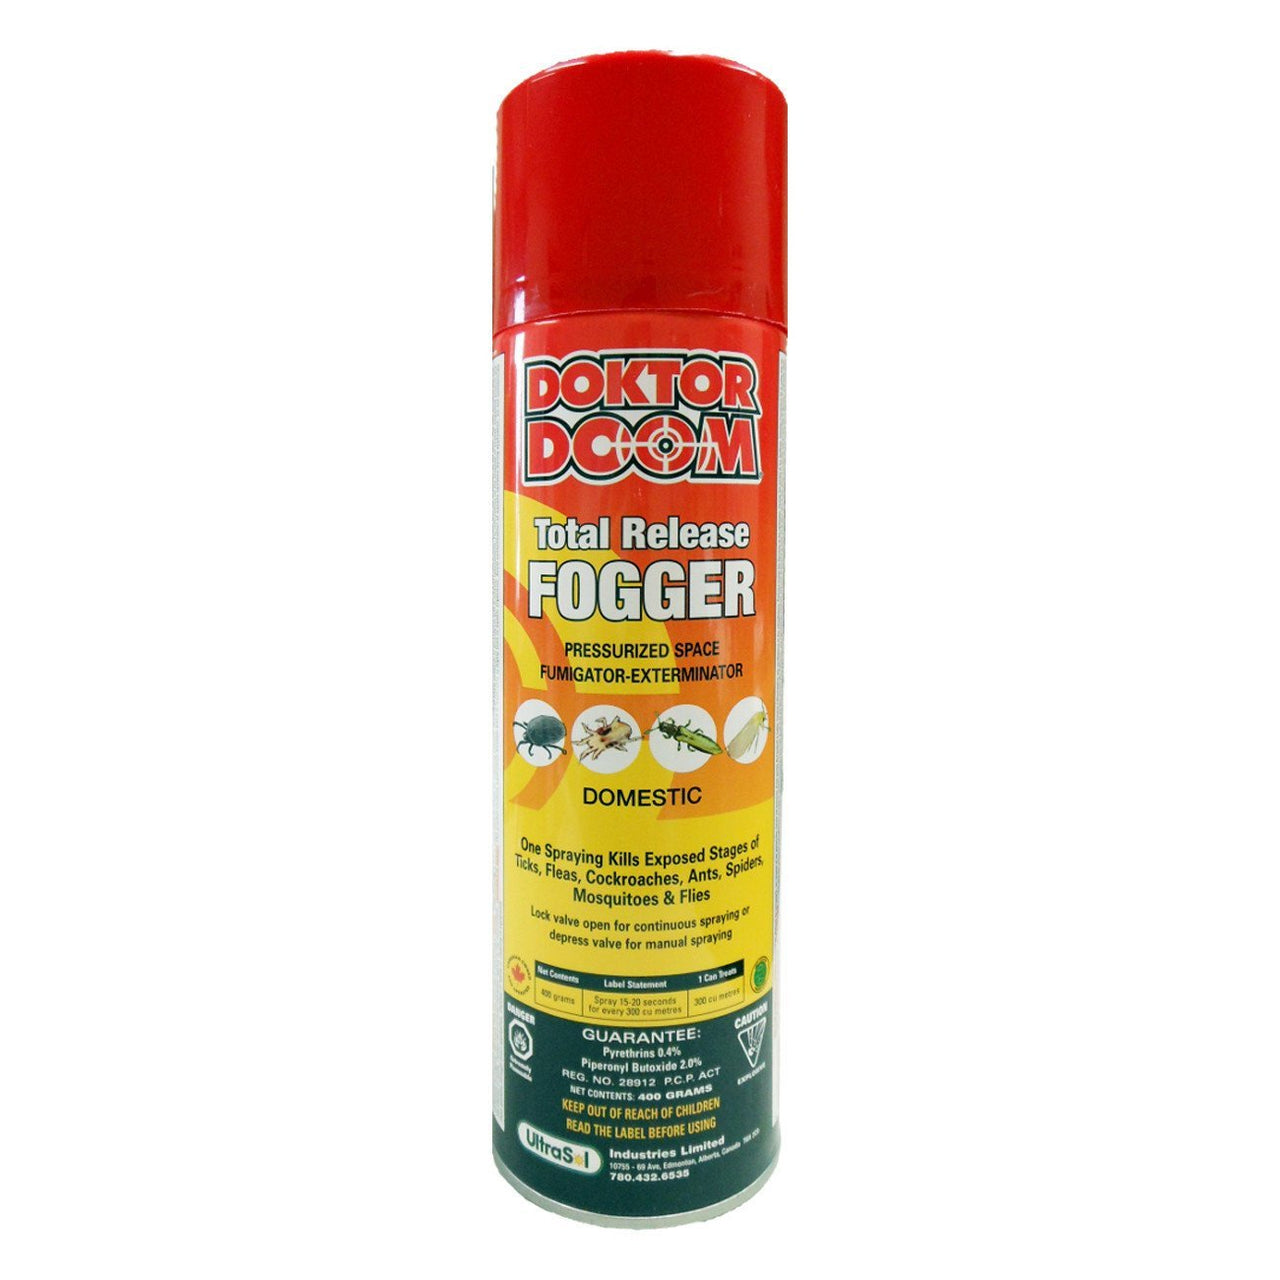 Doktor Doom Total Release Fogger 400G 0.4%pyr 2.0% Pbo - Pest Control Doktor Doom - Canada